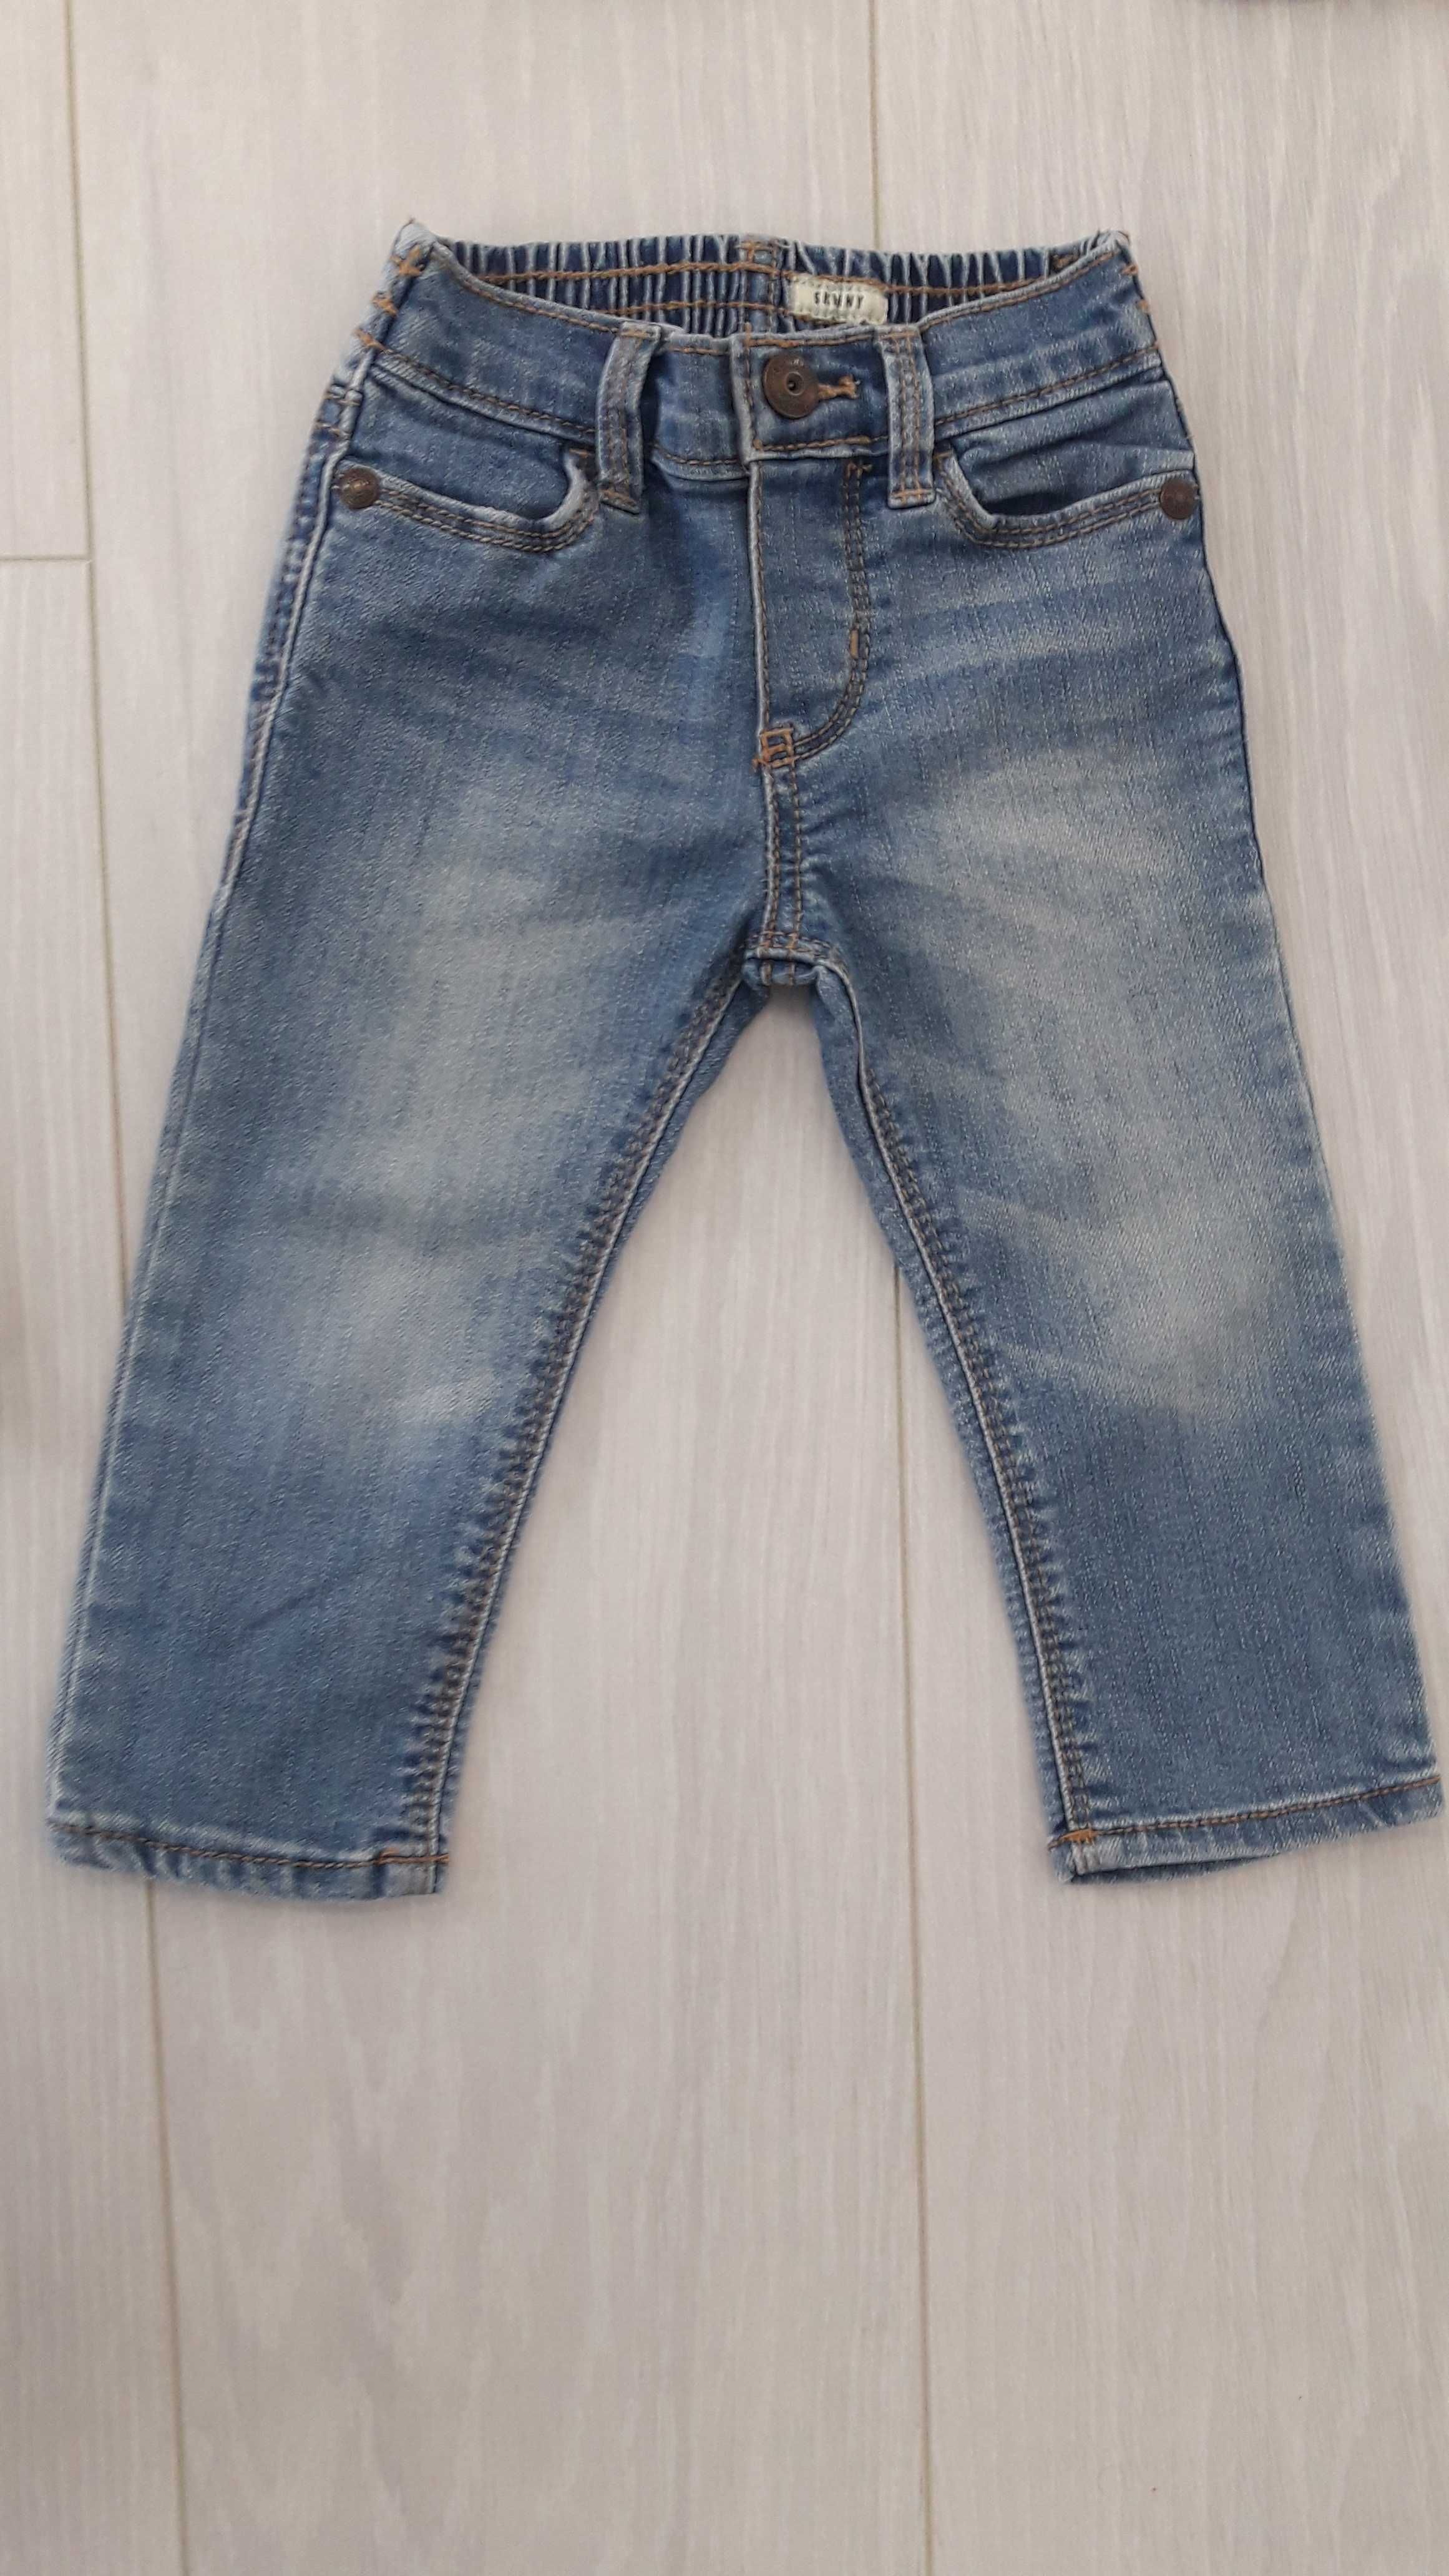 Джинсы, джинси, штани на девочку, мальчика 9 - 12 месяцев